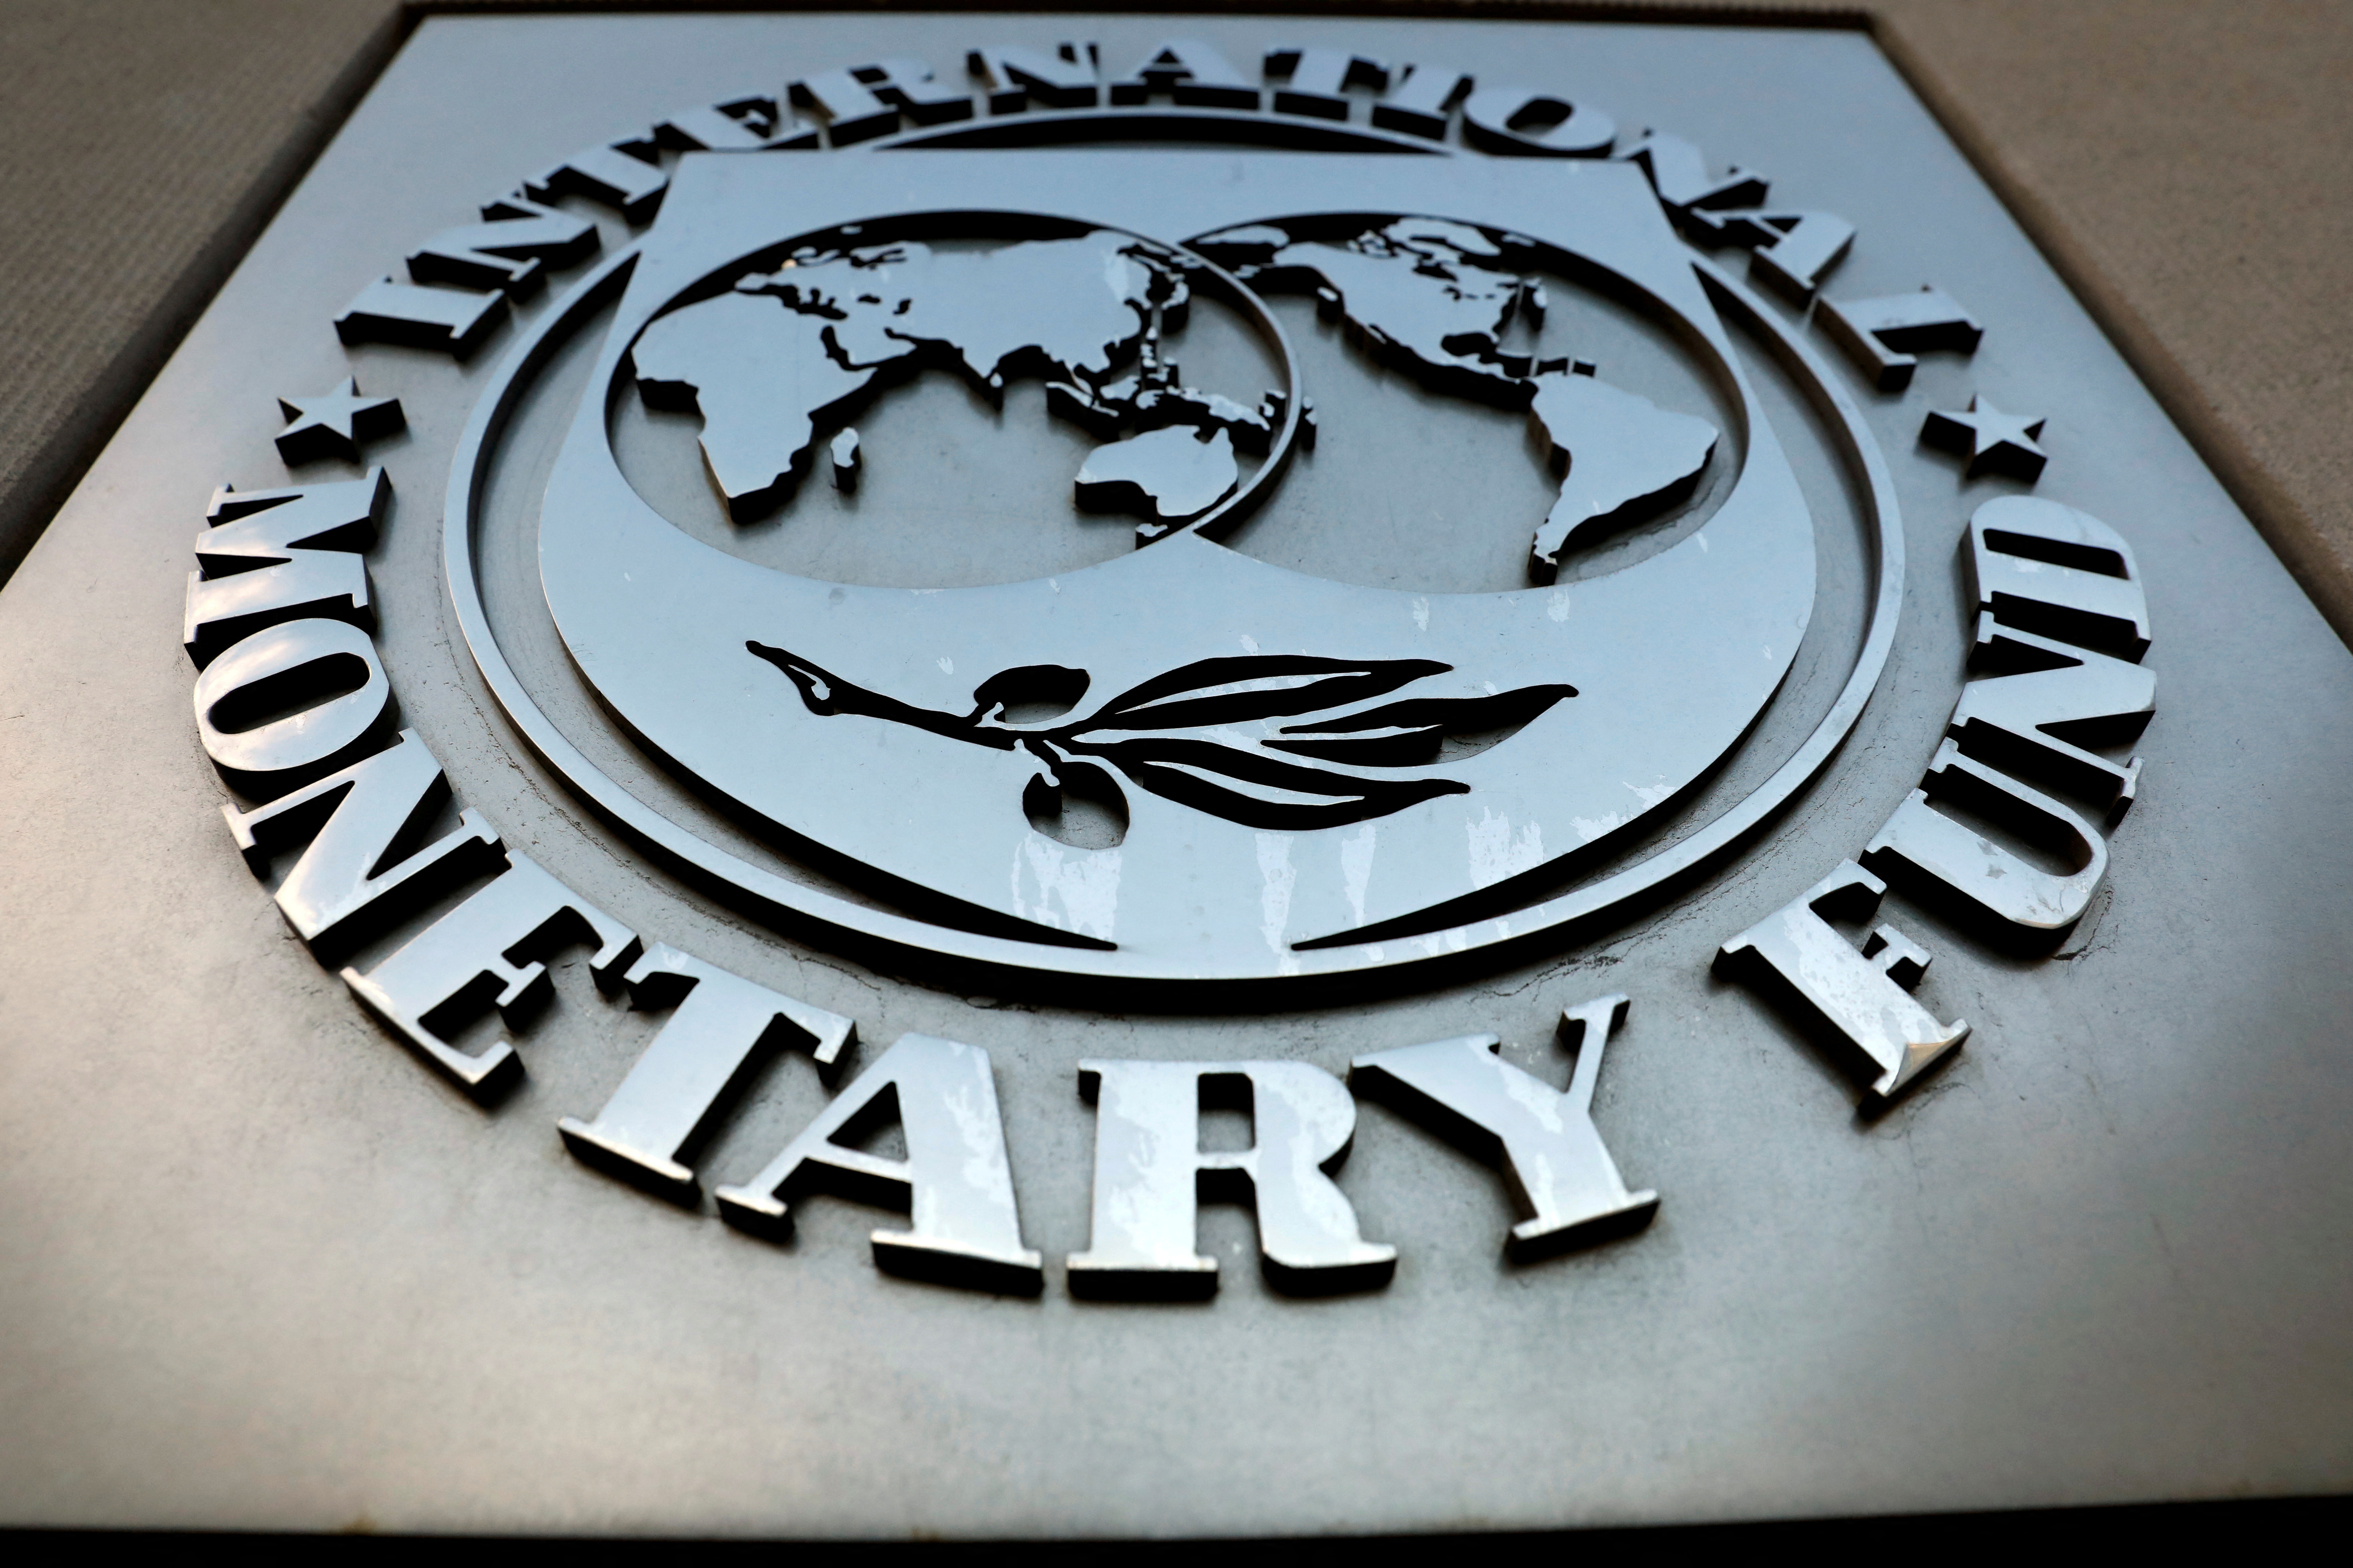 Валютно финансовые фонды. Международный валютный фонд. МВФ Вашингтон. Международный валютный фонд (МВФ). Герб международного валютного фонда.